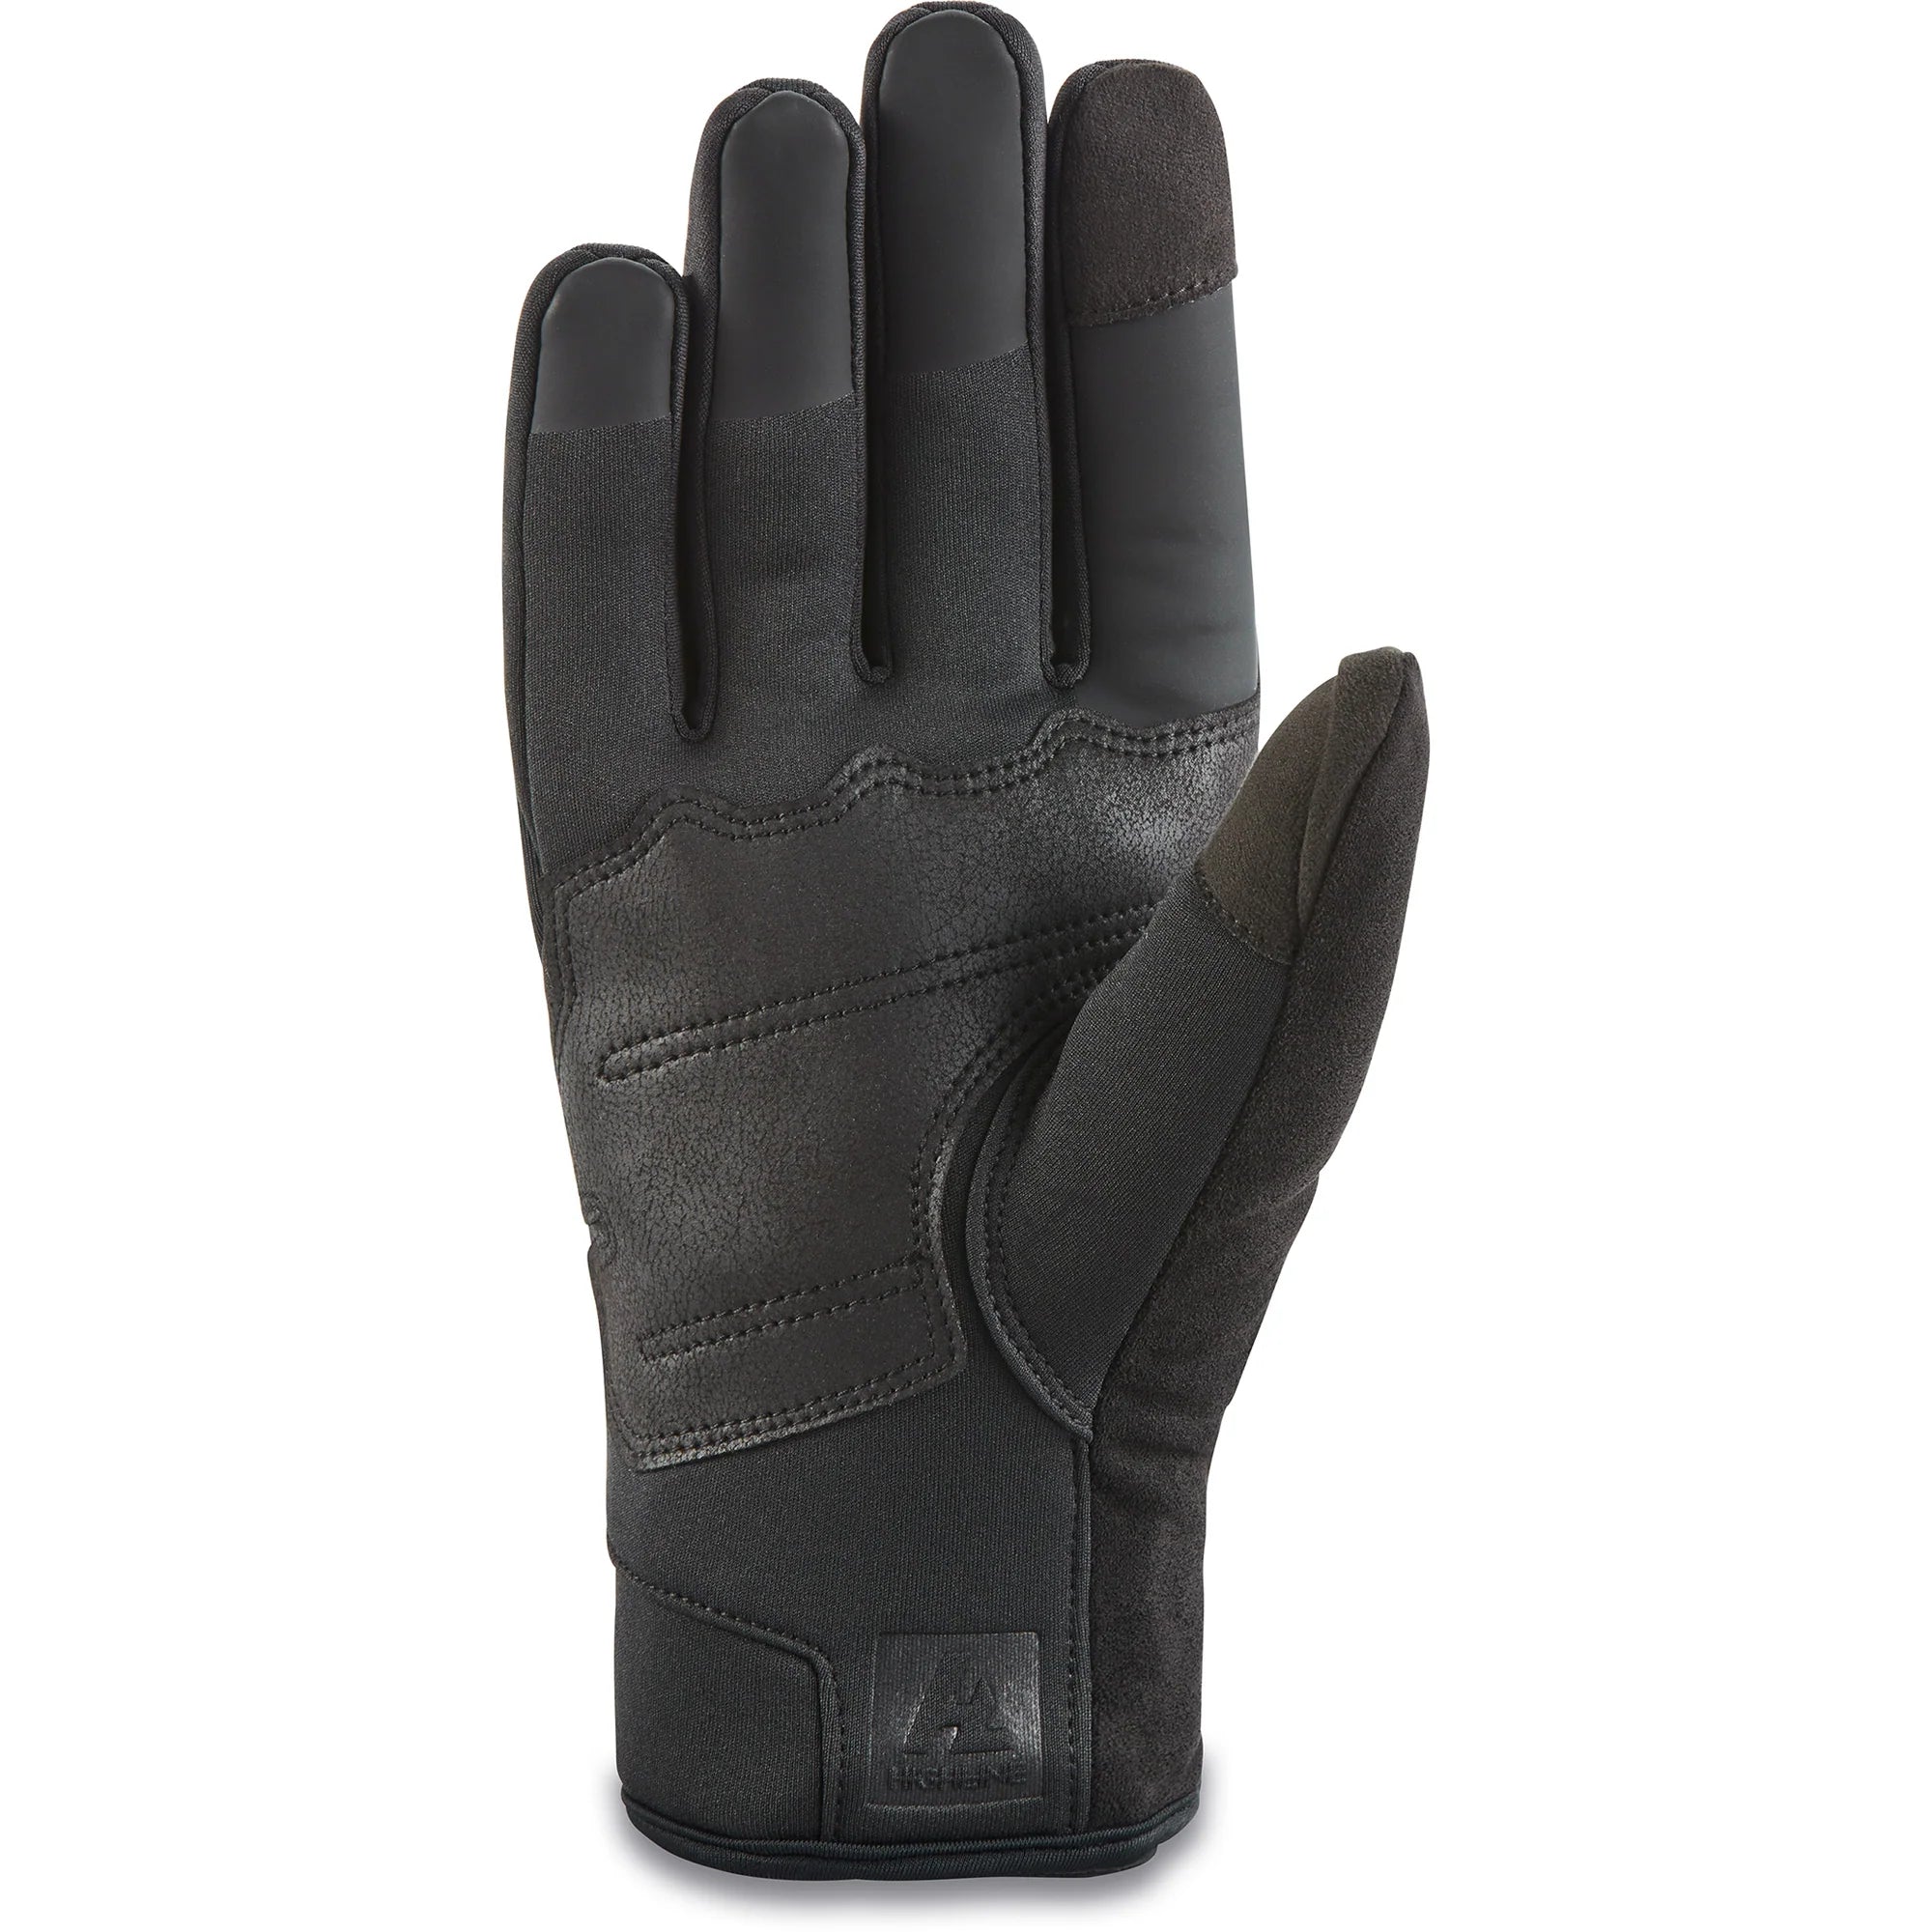 Factor Infinium Glove - Black